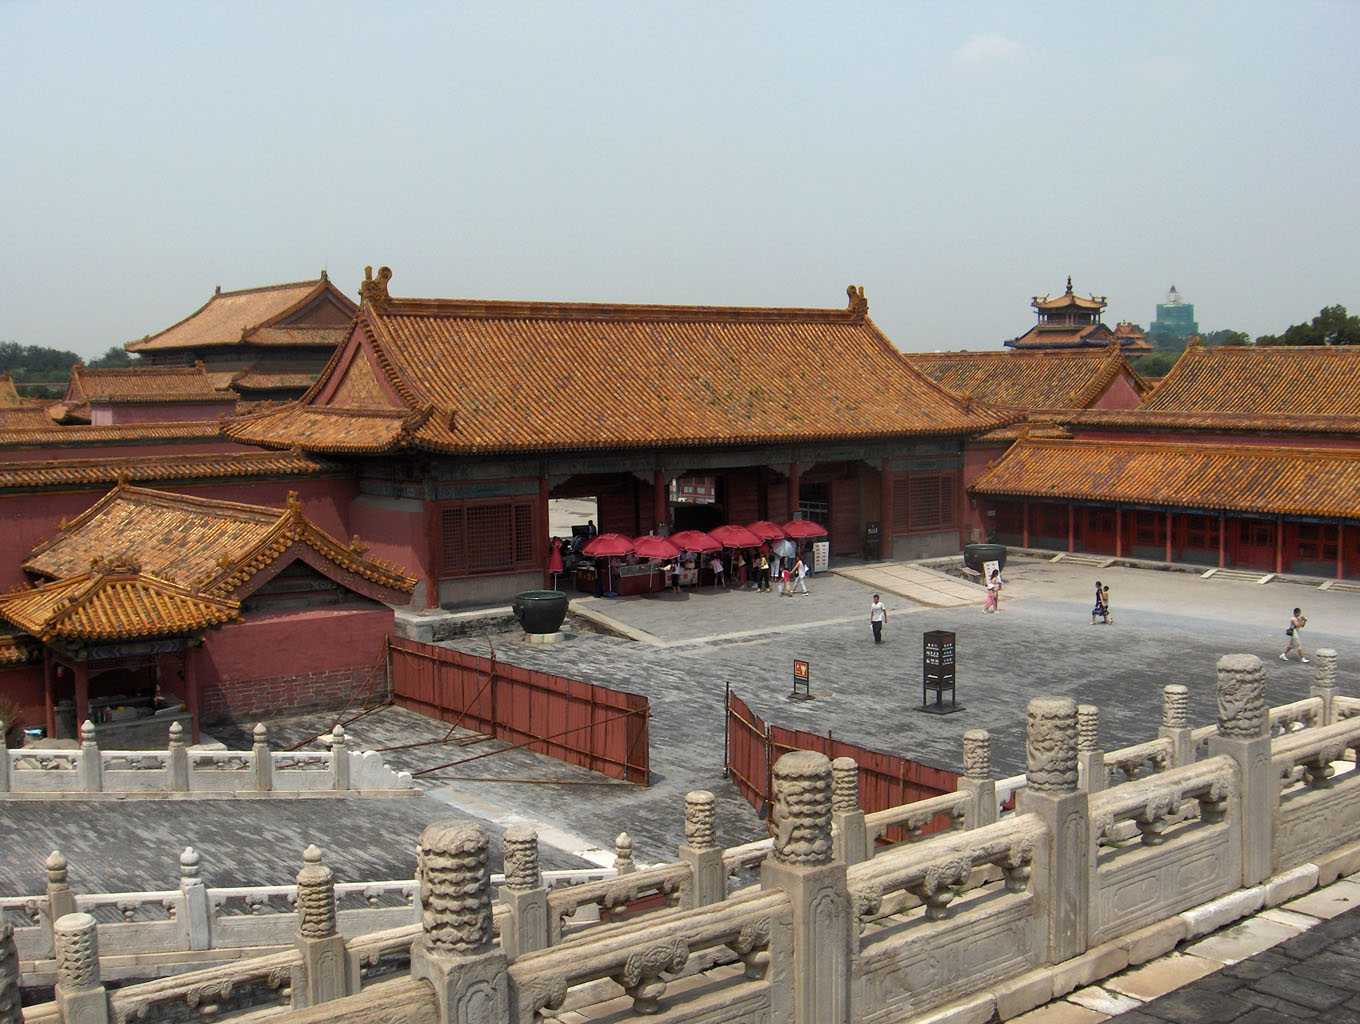 Une vue partielle de la cité Interdite à Pékin (le palais de la Pureté céleste), le 4 août 2005